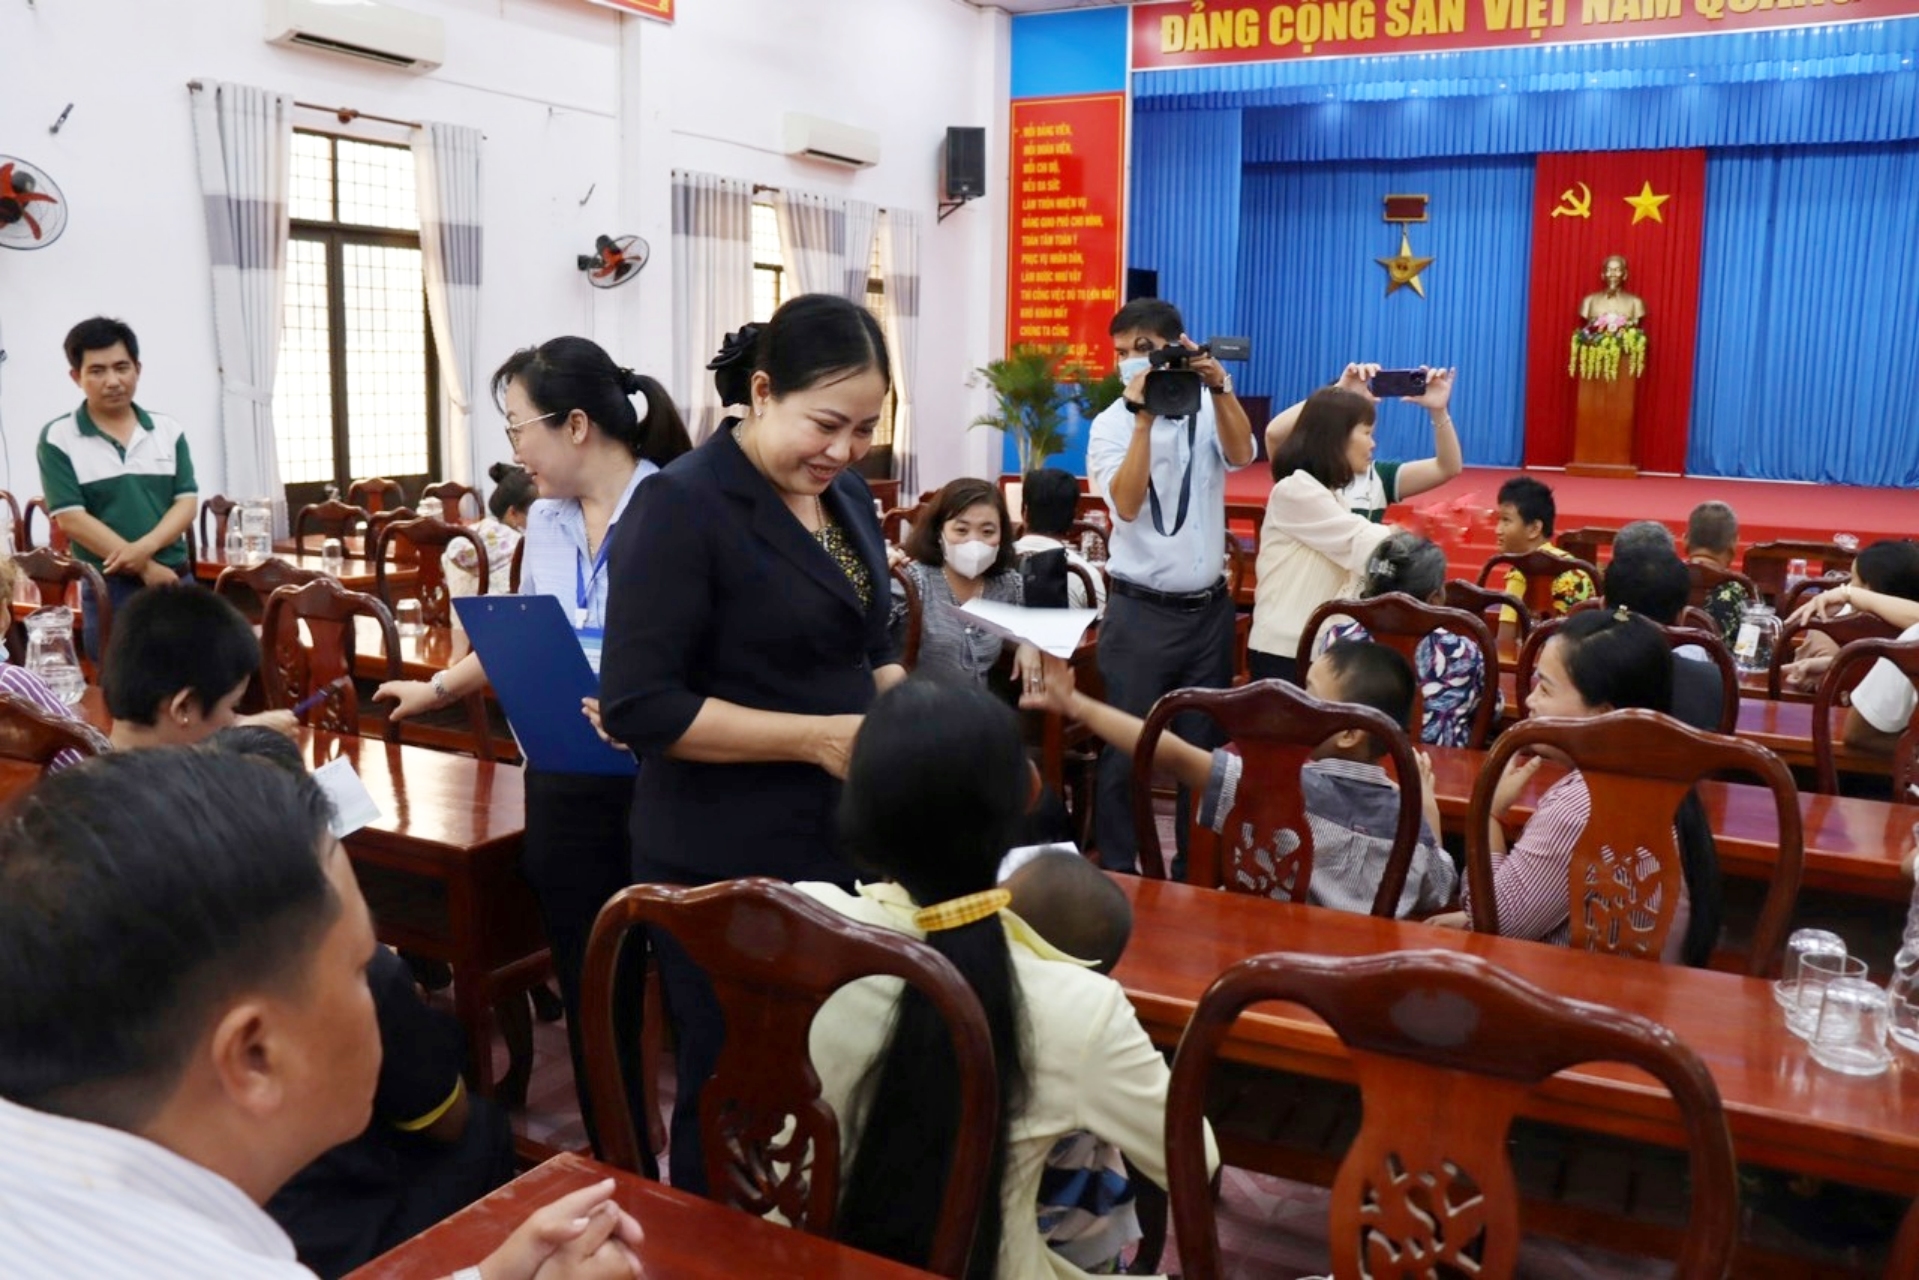 Quỹ bảo trợ trẻ em tỉnh Trà Vinh Phối hợp ngân hàng Vietcombank Thăm tặng quà cho trẻ em khuyết tật